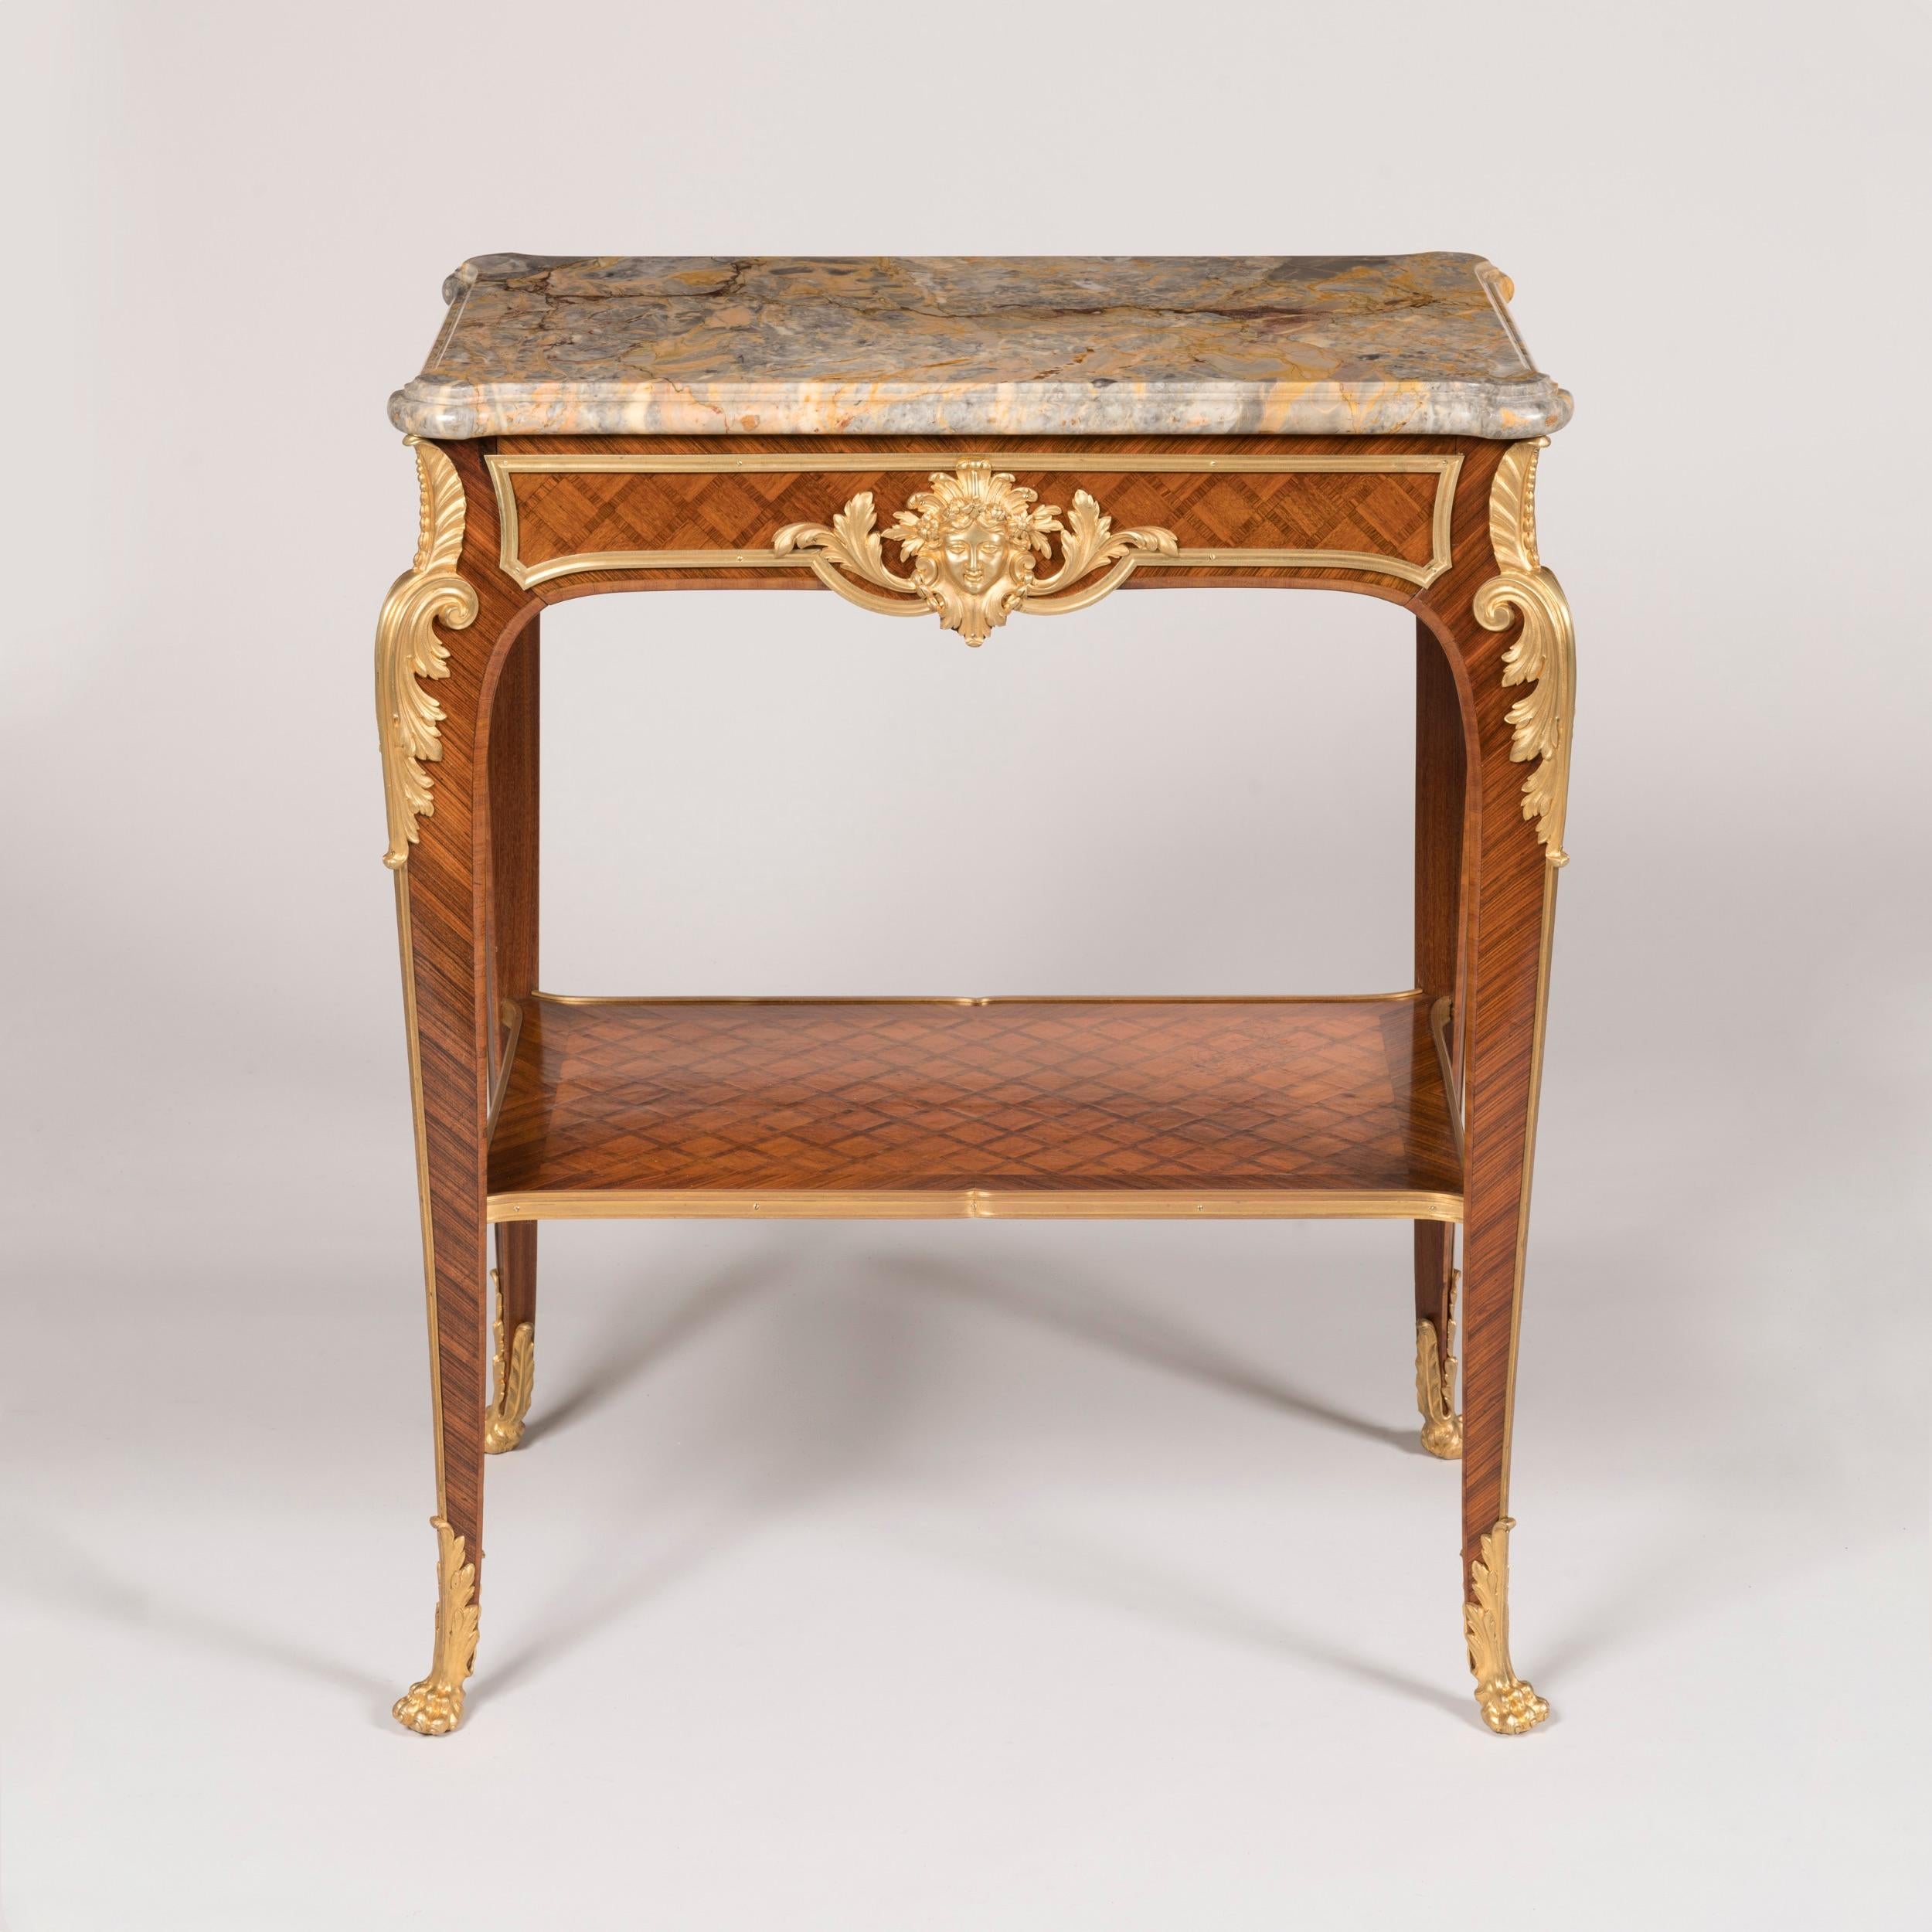 Table d'appoint en marqueterie de style Louis XVI

Construit en bois de roi et en bois de tulipier avec de fines montures en bronze doré ; de forme autonome, les pieds sabots en bronze doré en forme de pattes de lions, les pieds cabriole à